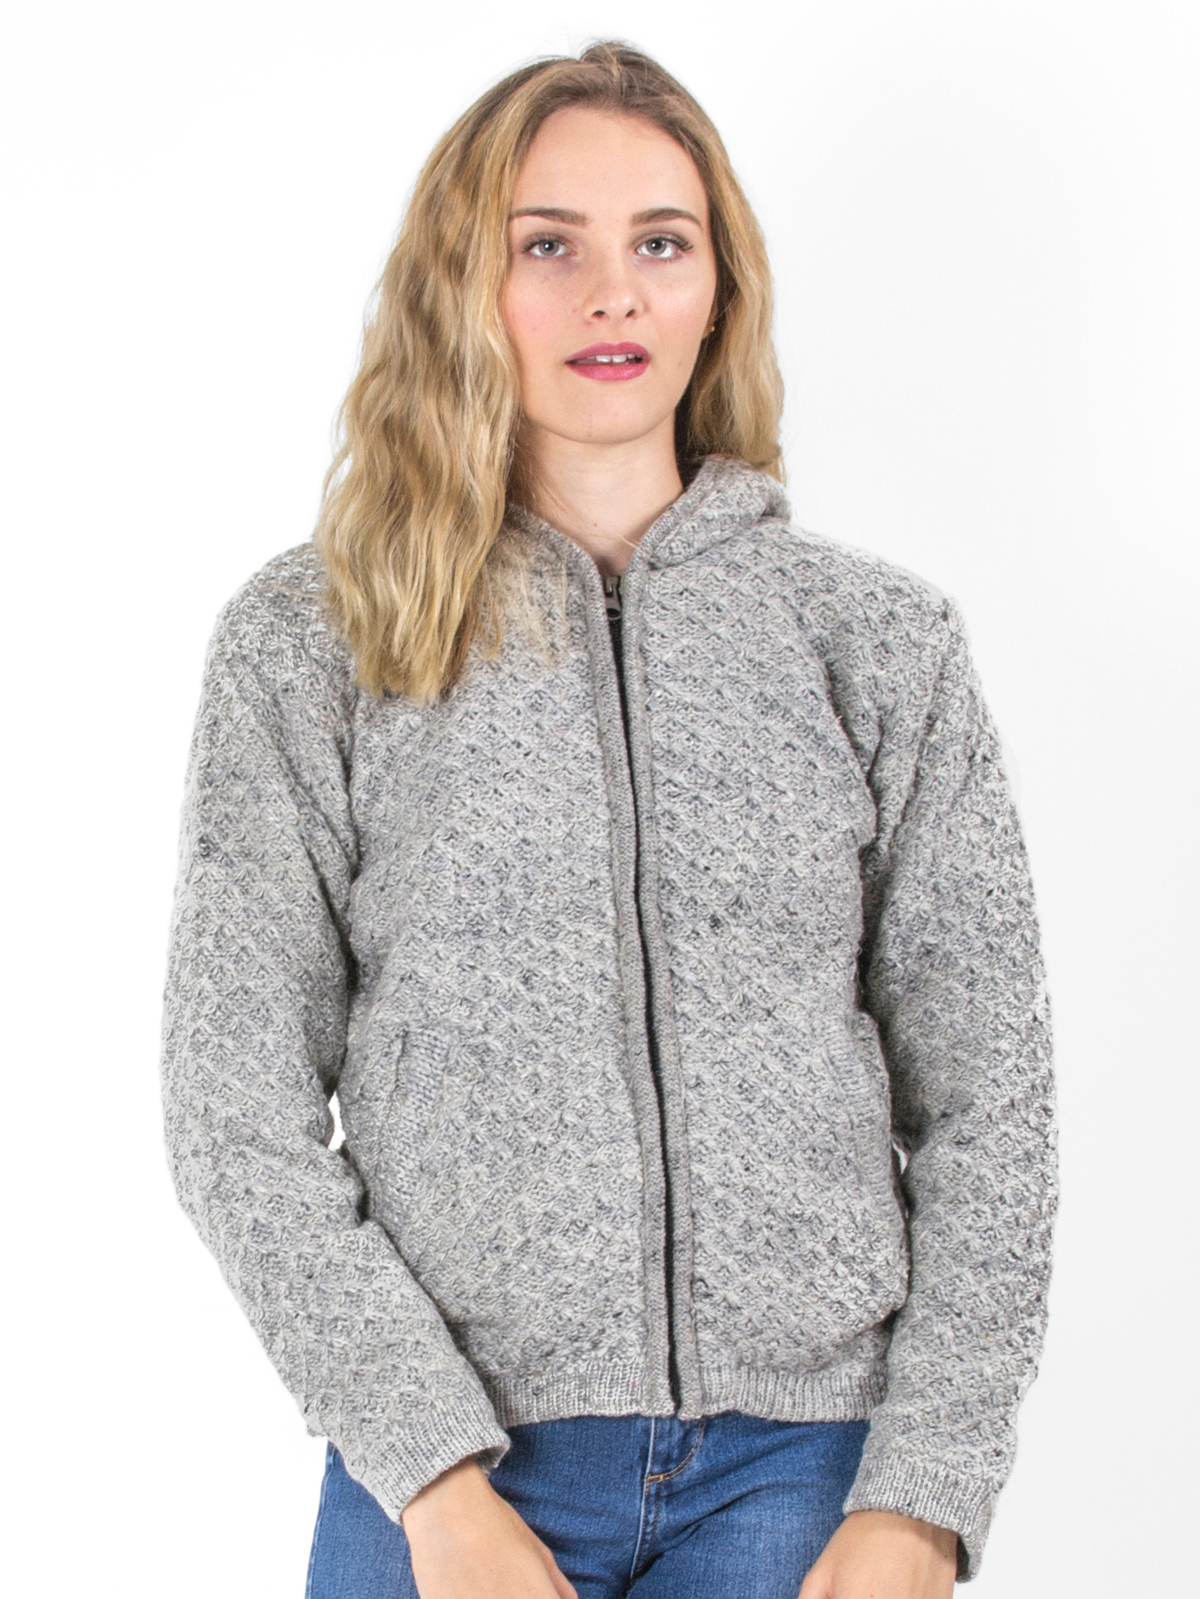 Veste en laine grise à capuche motif losange doublée polaire